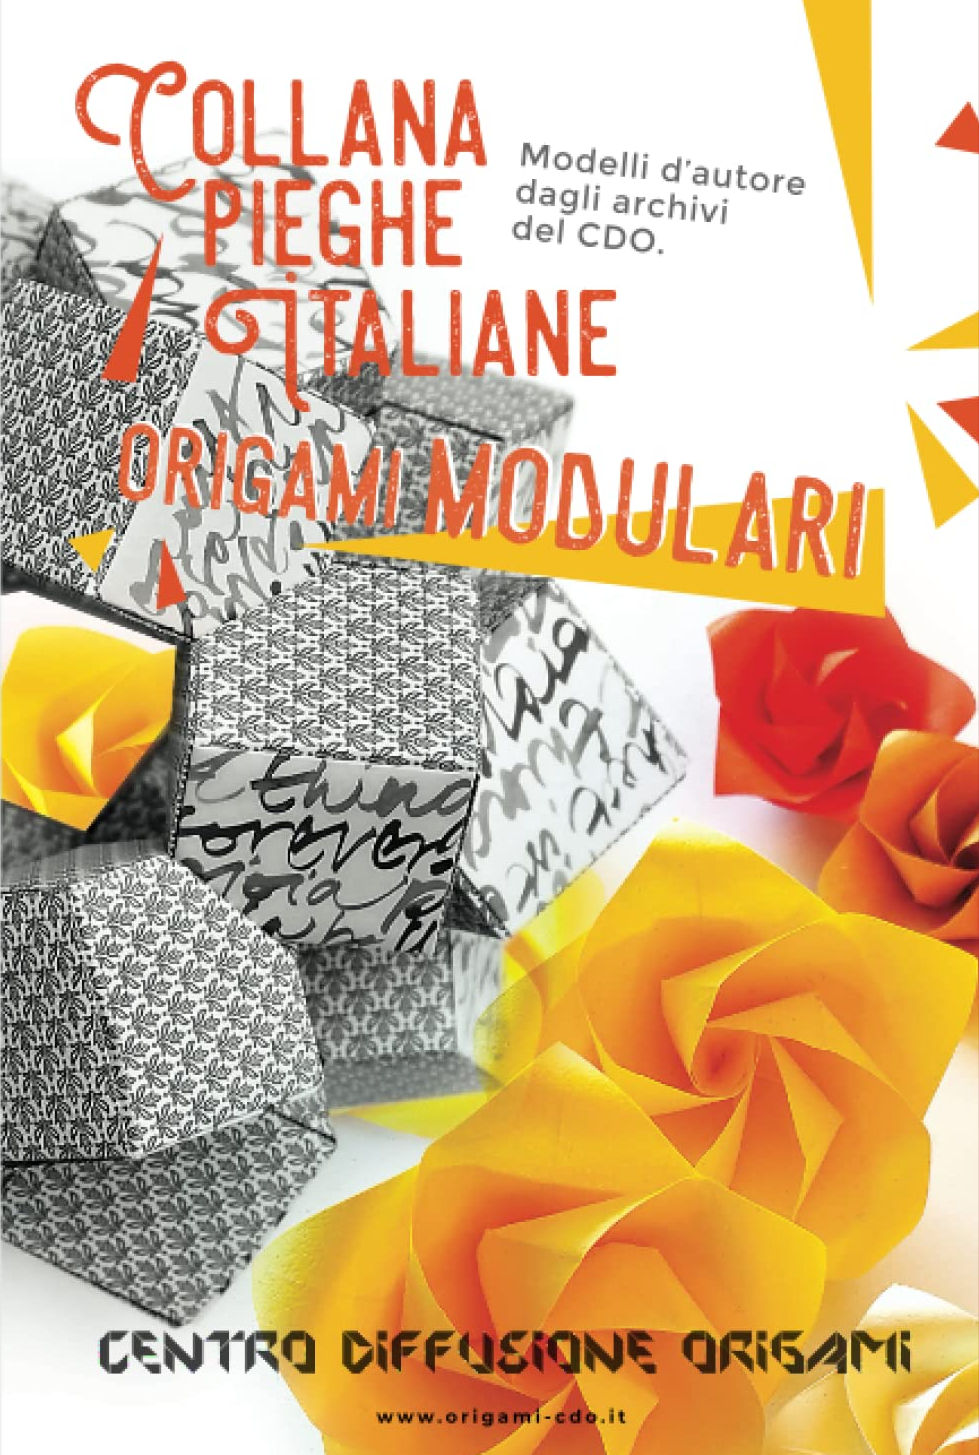 Collana pieghe Italiane - origami MODULARI